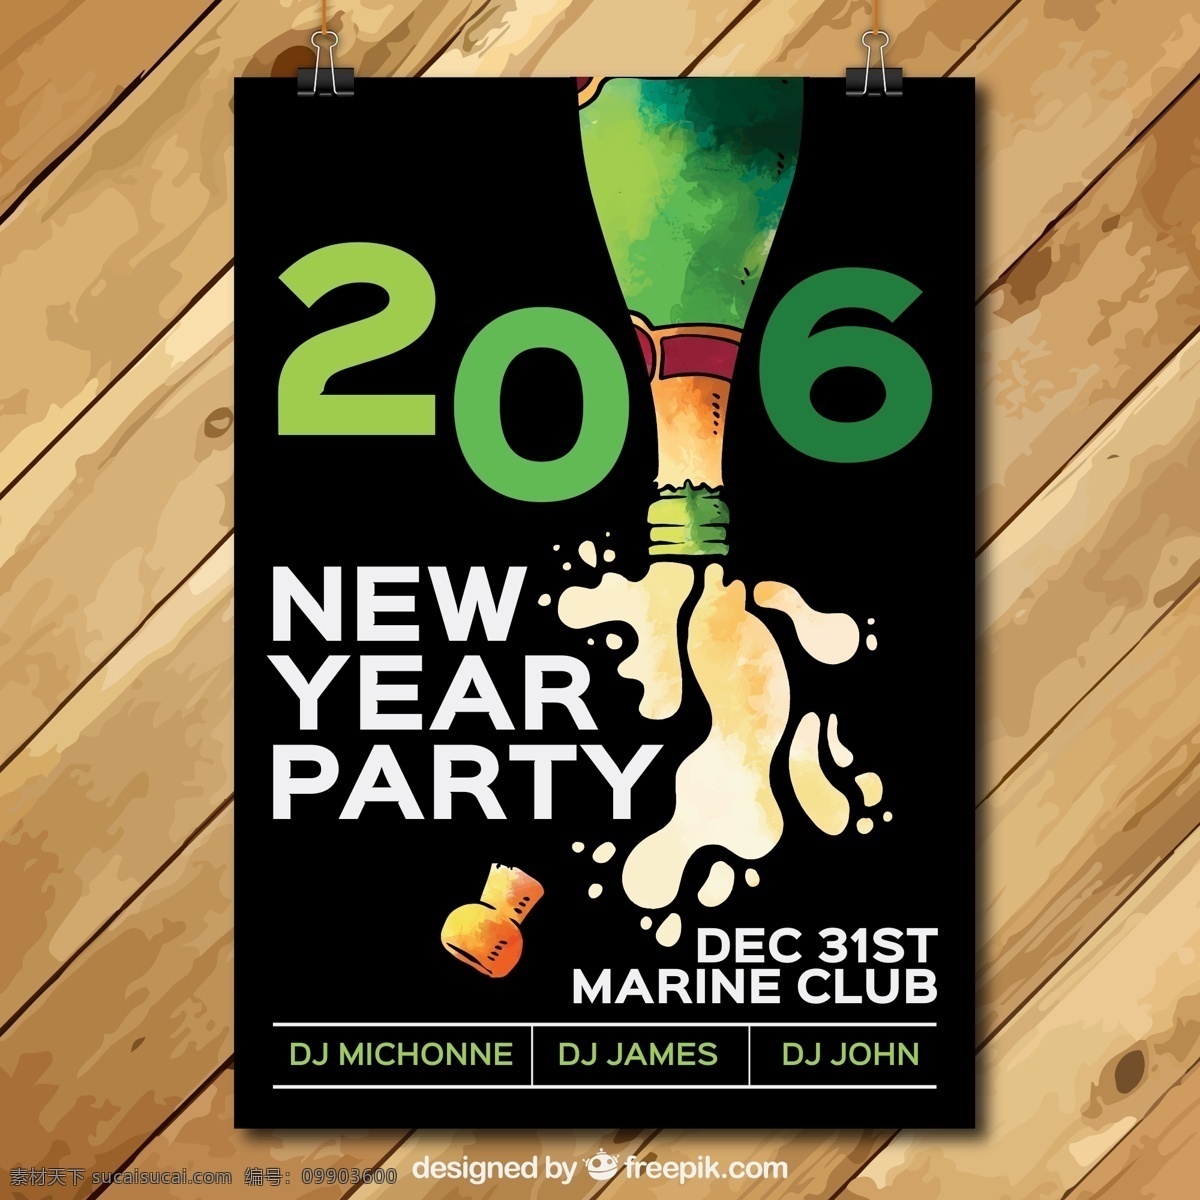 酒吧创意海报 2016 主题 酒吧 创意 活动 新年 酒吧创意主题 创意海报